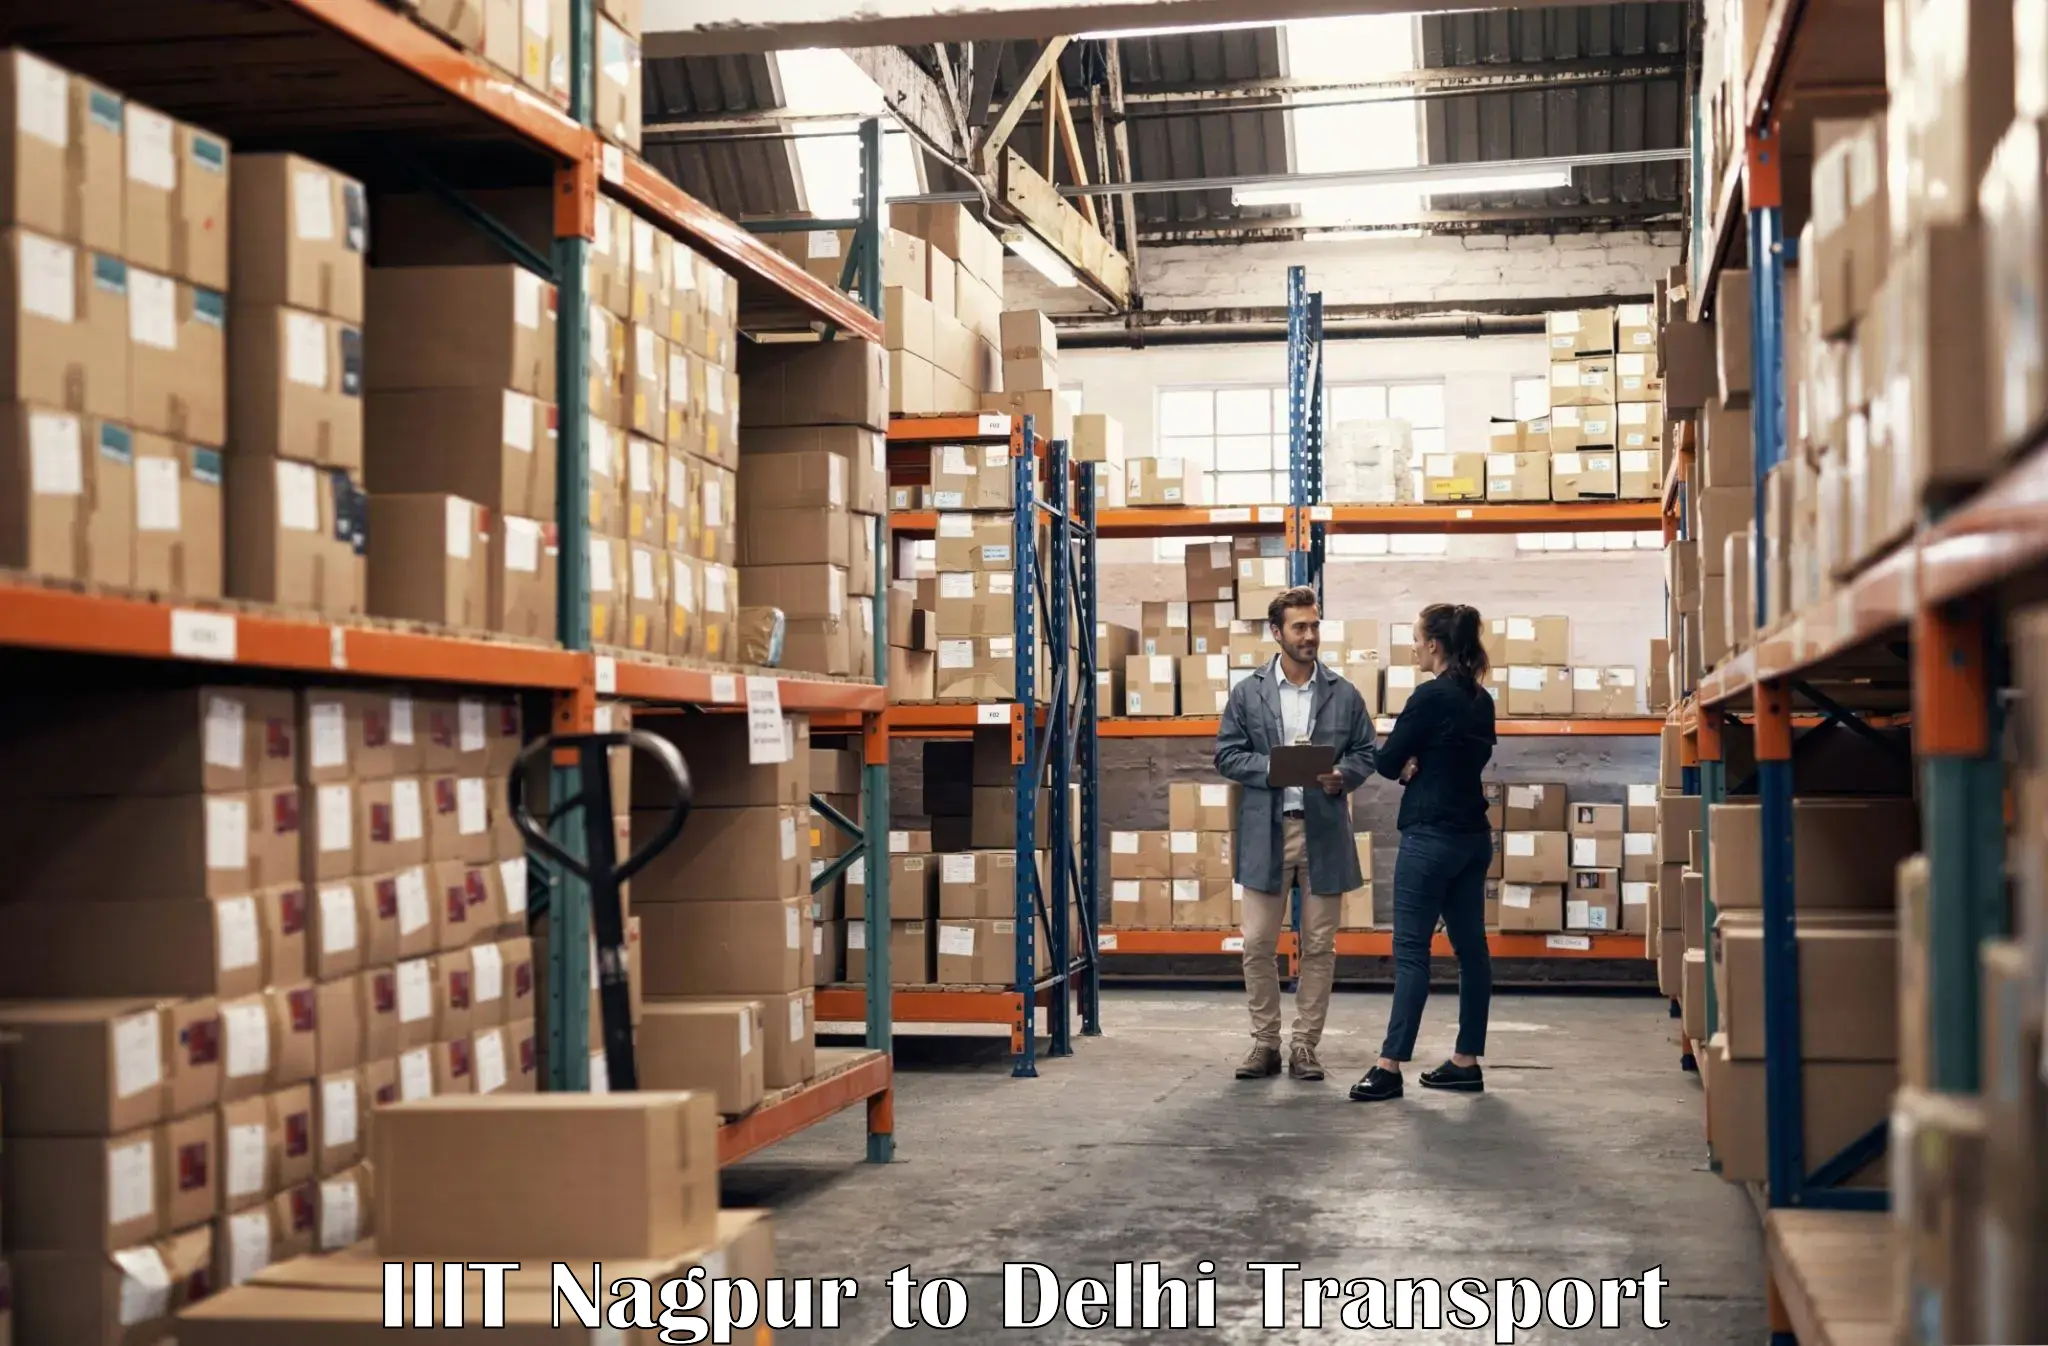 Delivery service IIIT Nagpur to IIT Delhi